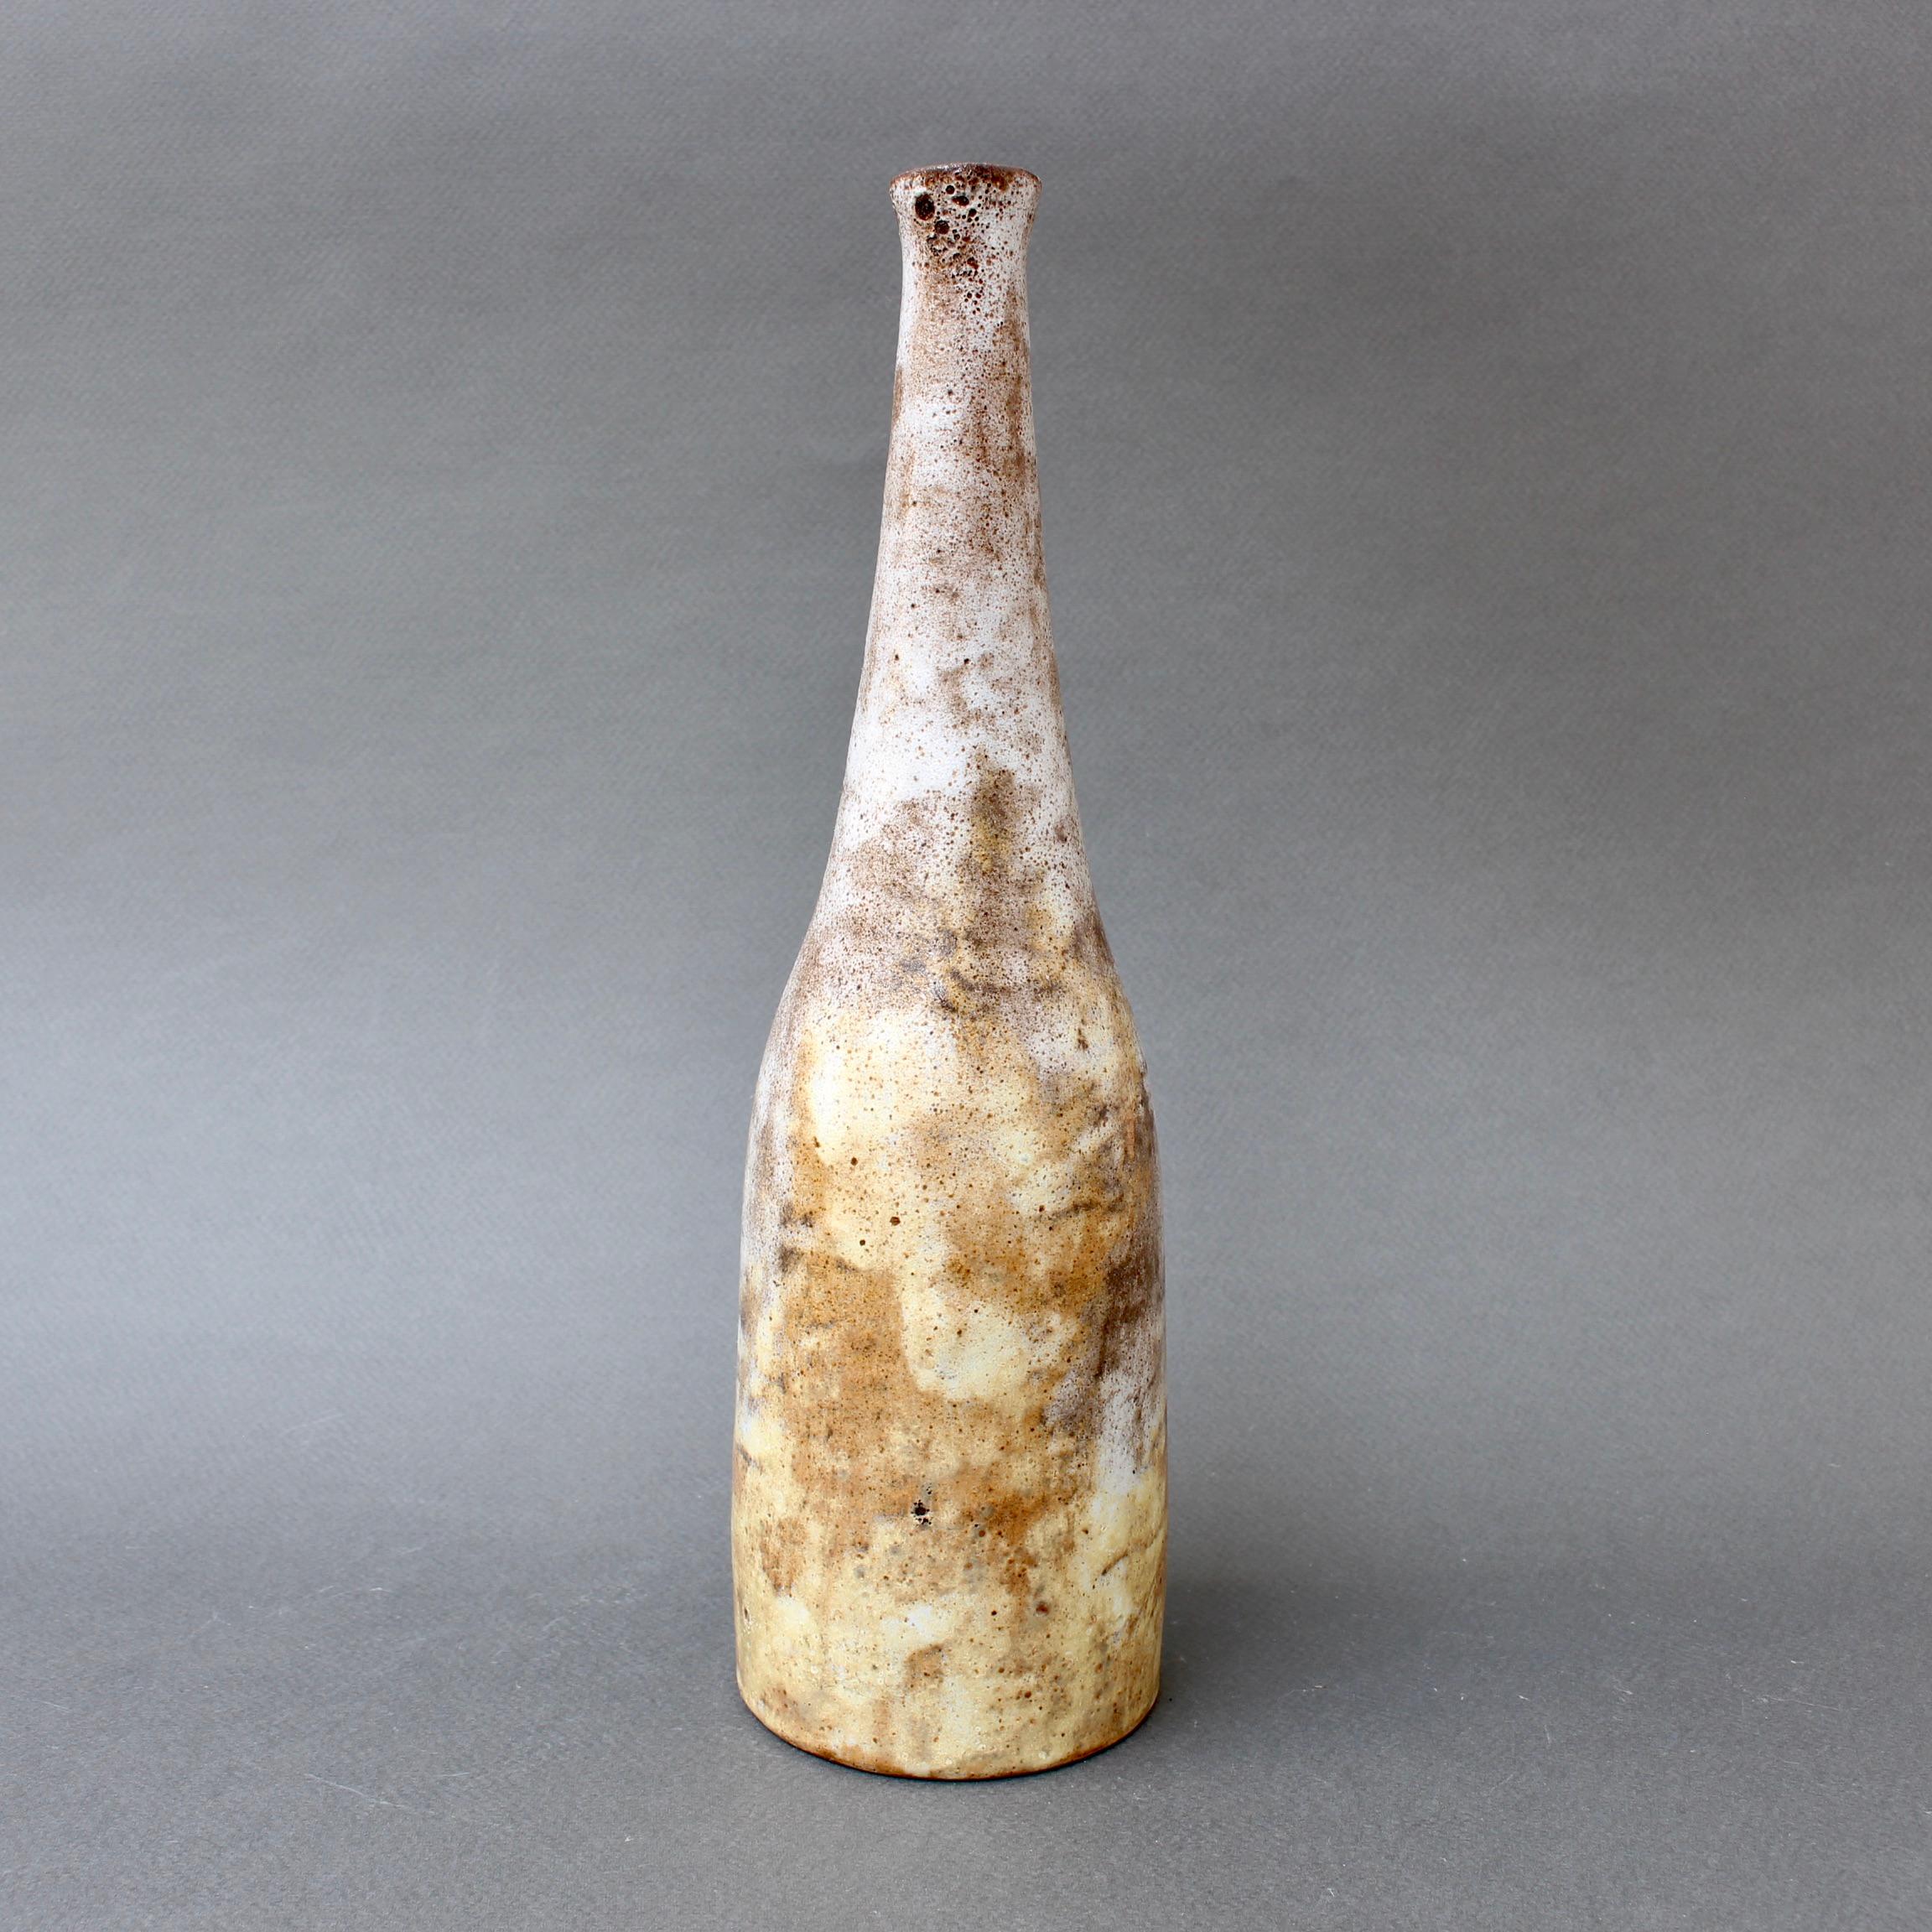 Keramikflasche/Vase aus der Jahrhundertmitte von Alexandre Kostanda (ca. 1960er Jahre). Dieses atemberaubende asymmetrische Steingutgefäß hat ein nebliges Aussehen mit Erdtönen in Braun, Beige und zarten Gelbtönen. Kostandas Stücke sind taktil und